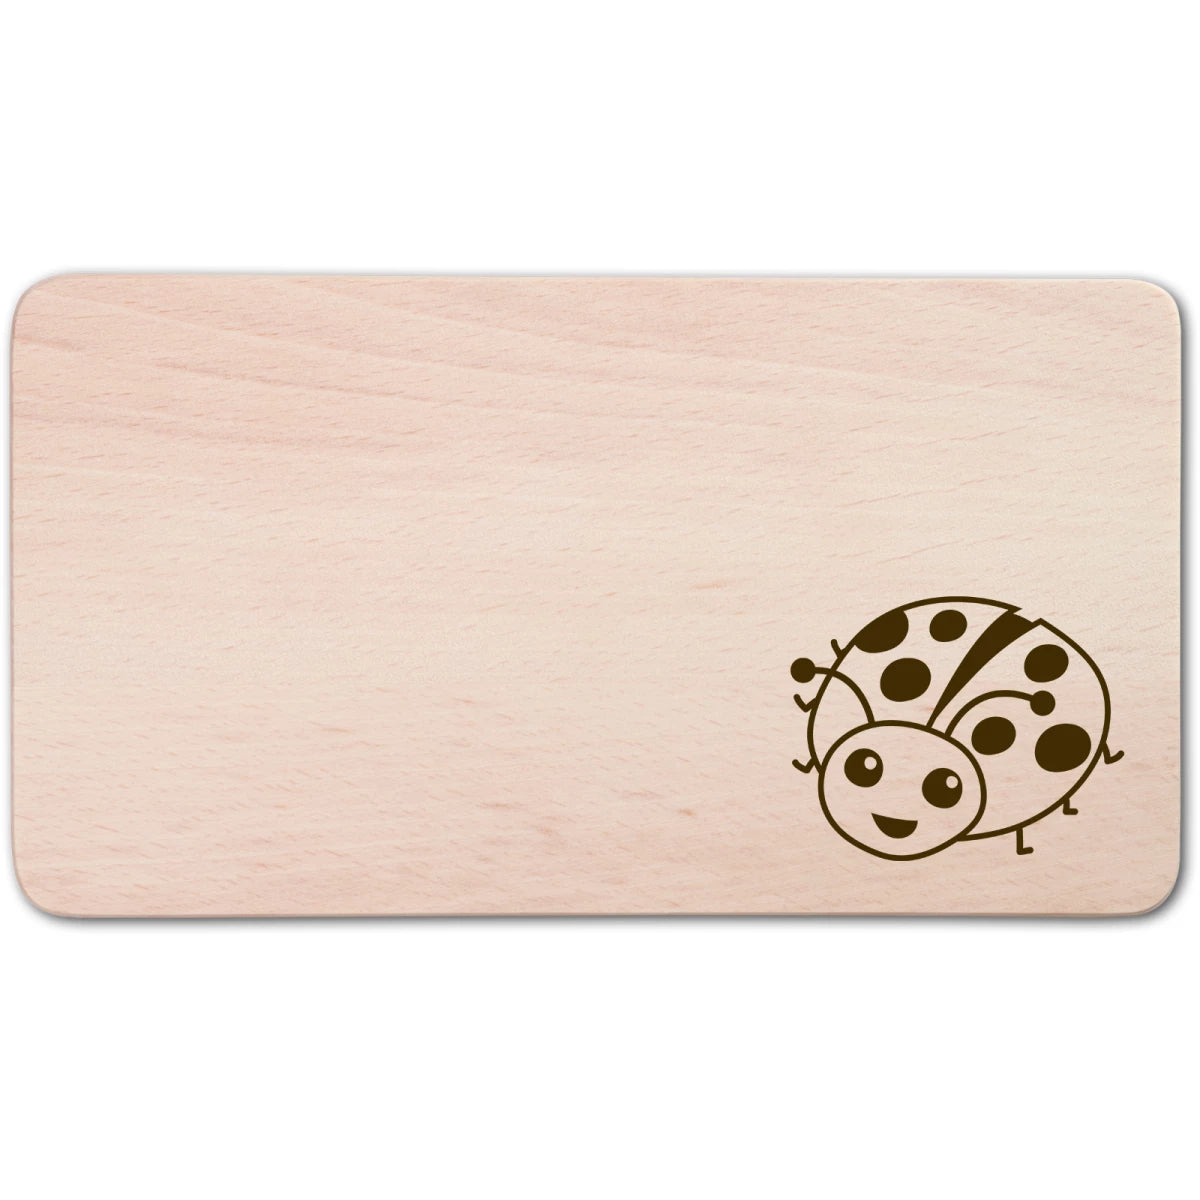 Montessori - houten plankje met lieveheersbeestje - 22 cm